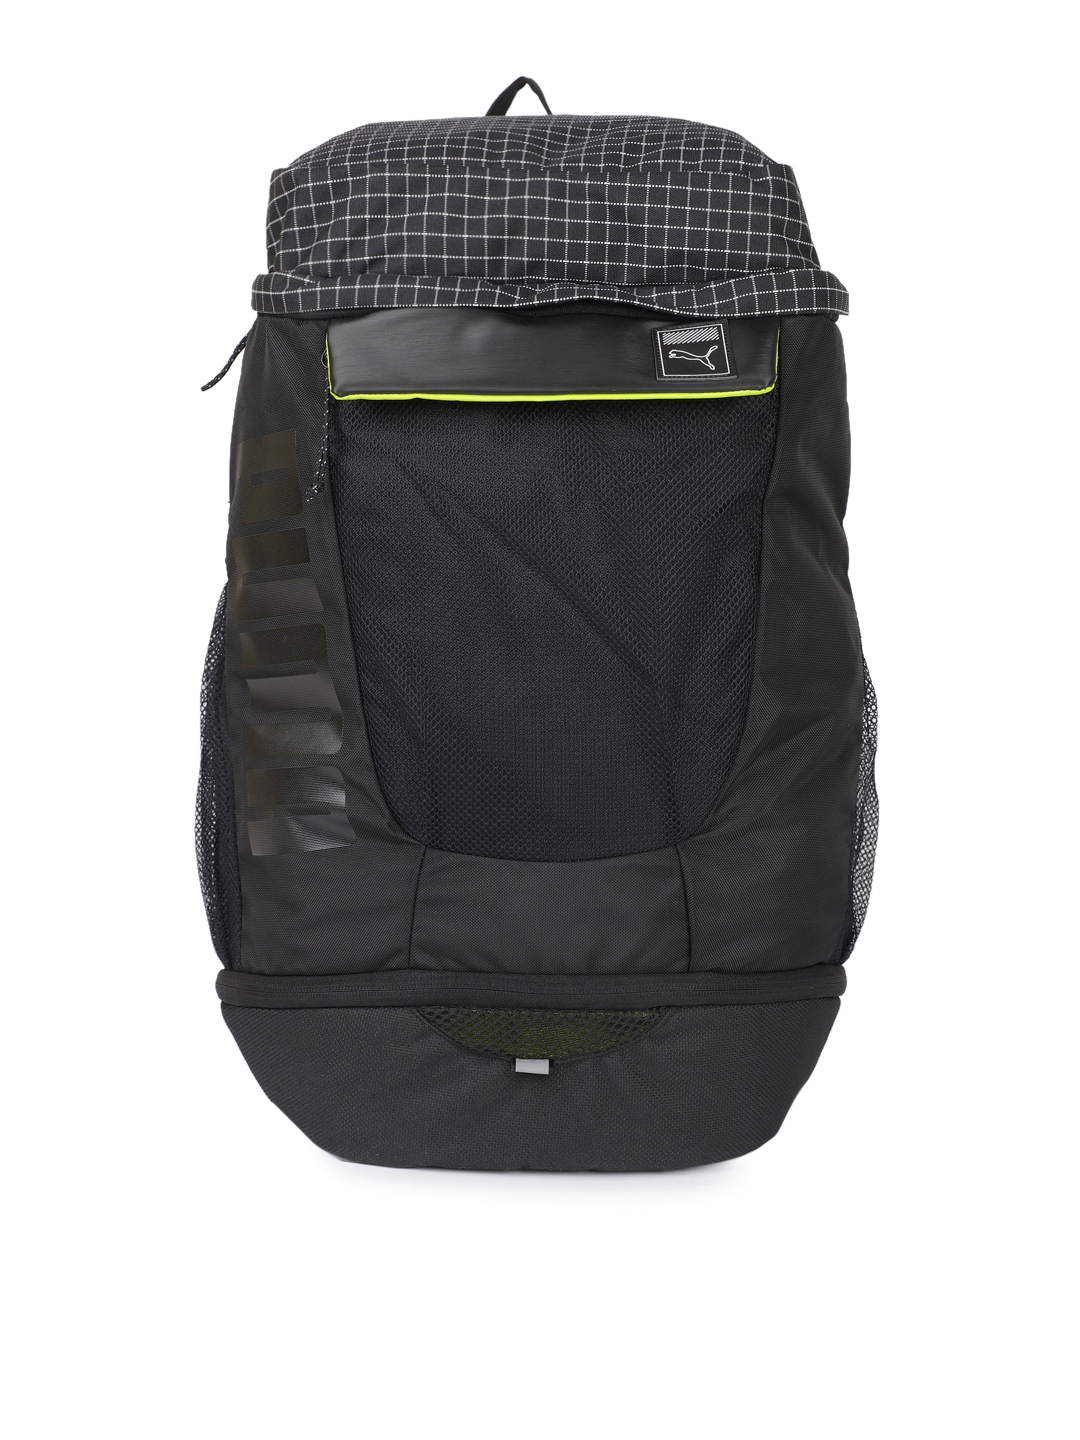 puma urban backpack